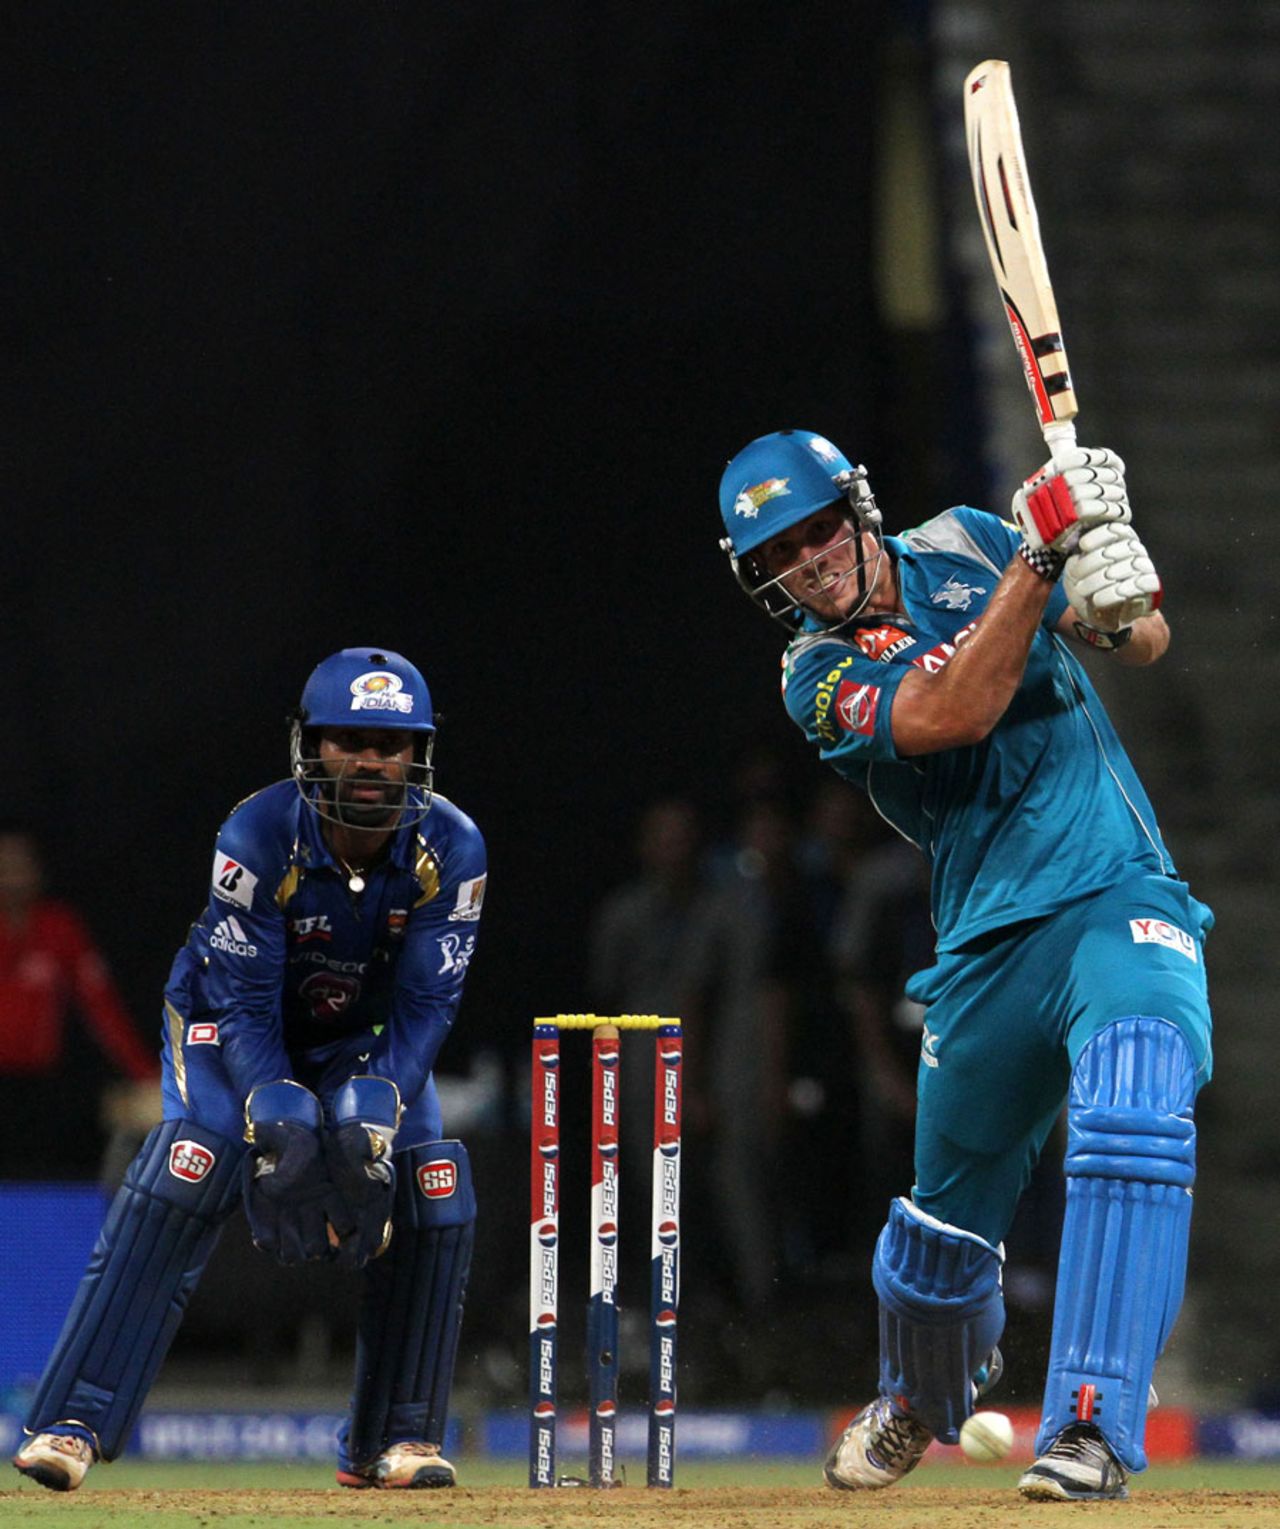 Mitchell Marsh plays a shot during his knock of 38, Mumbai Indians v Pune Warriors, IPL 2013, Mumbai, April 13, 2013